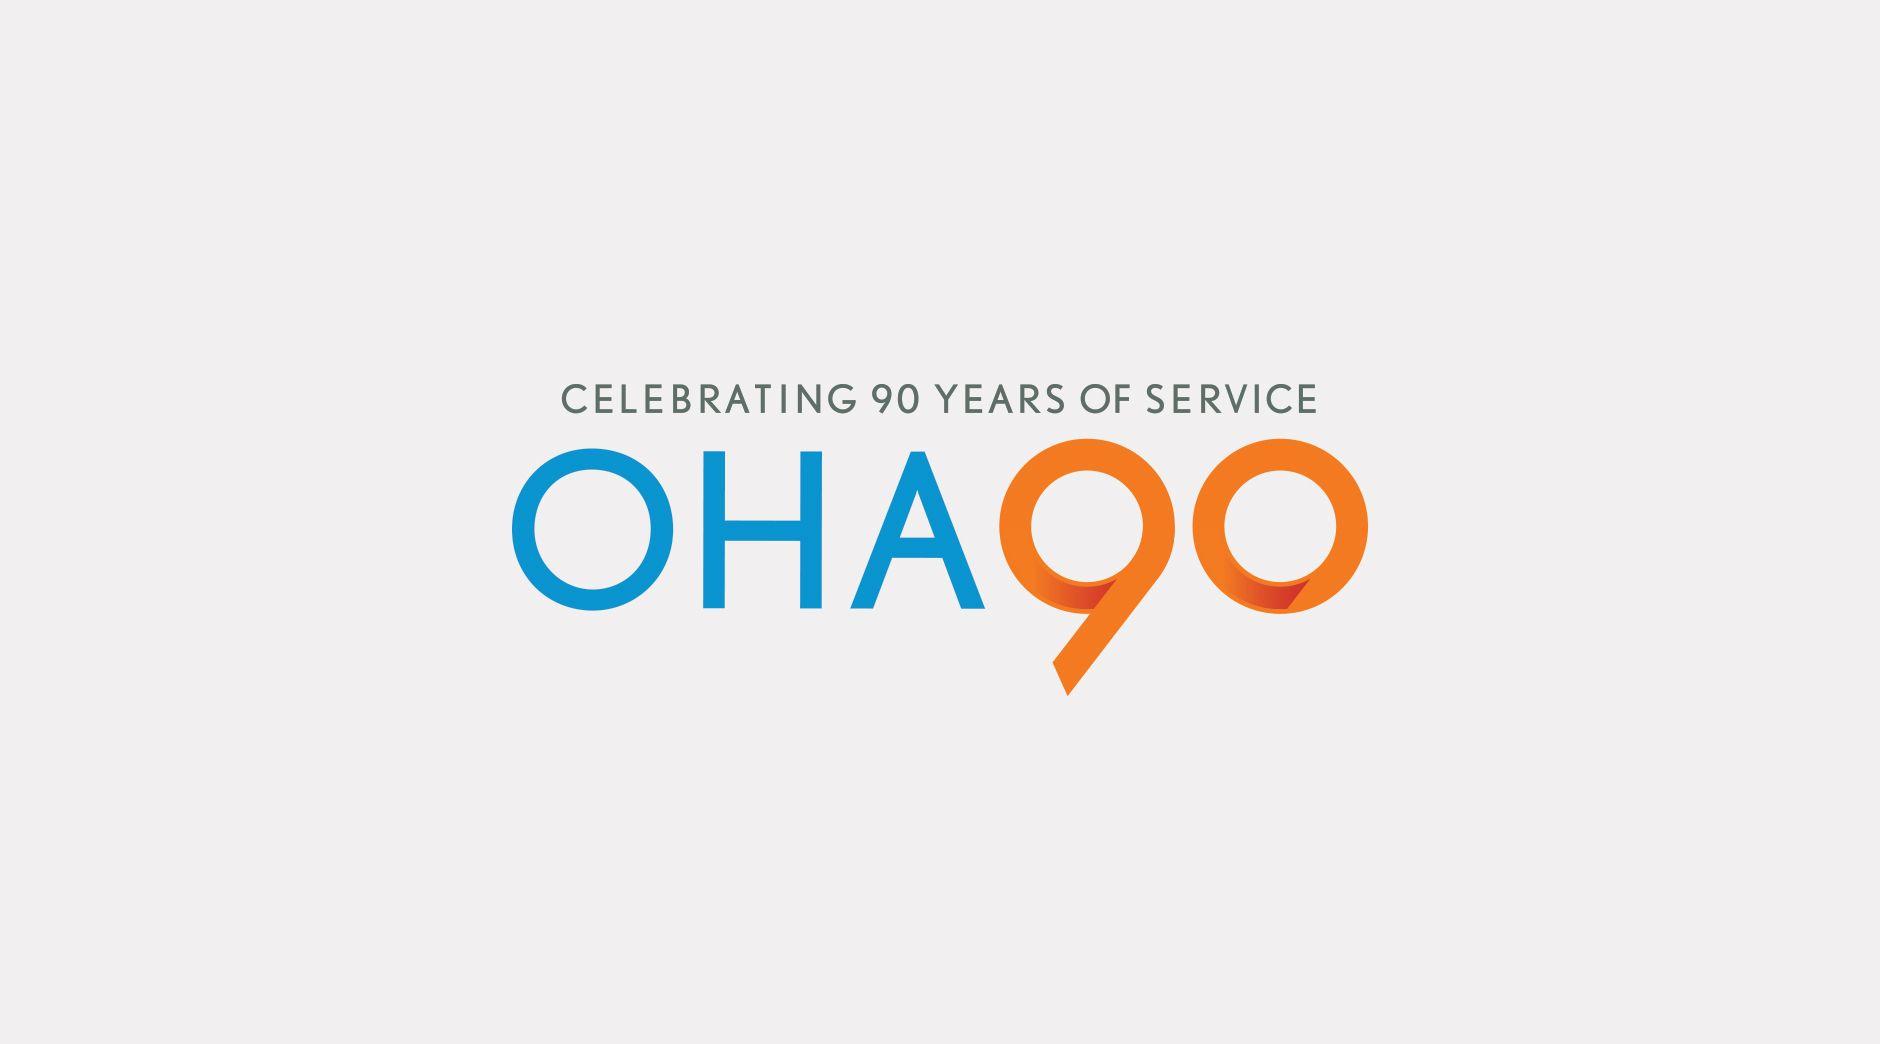 OHA Logo - OHA 90th anniversary identity and marketing campaign